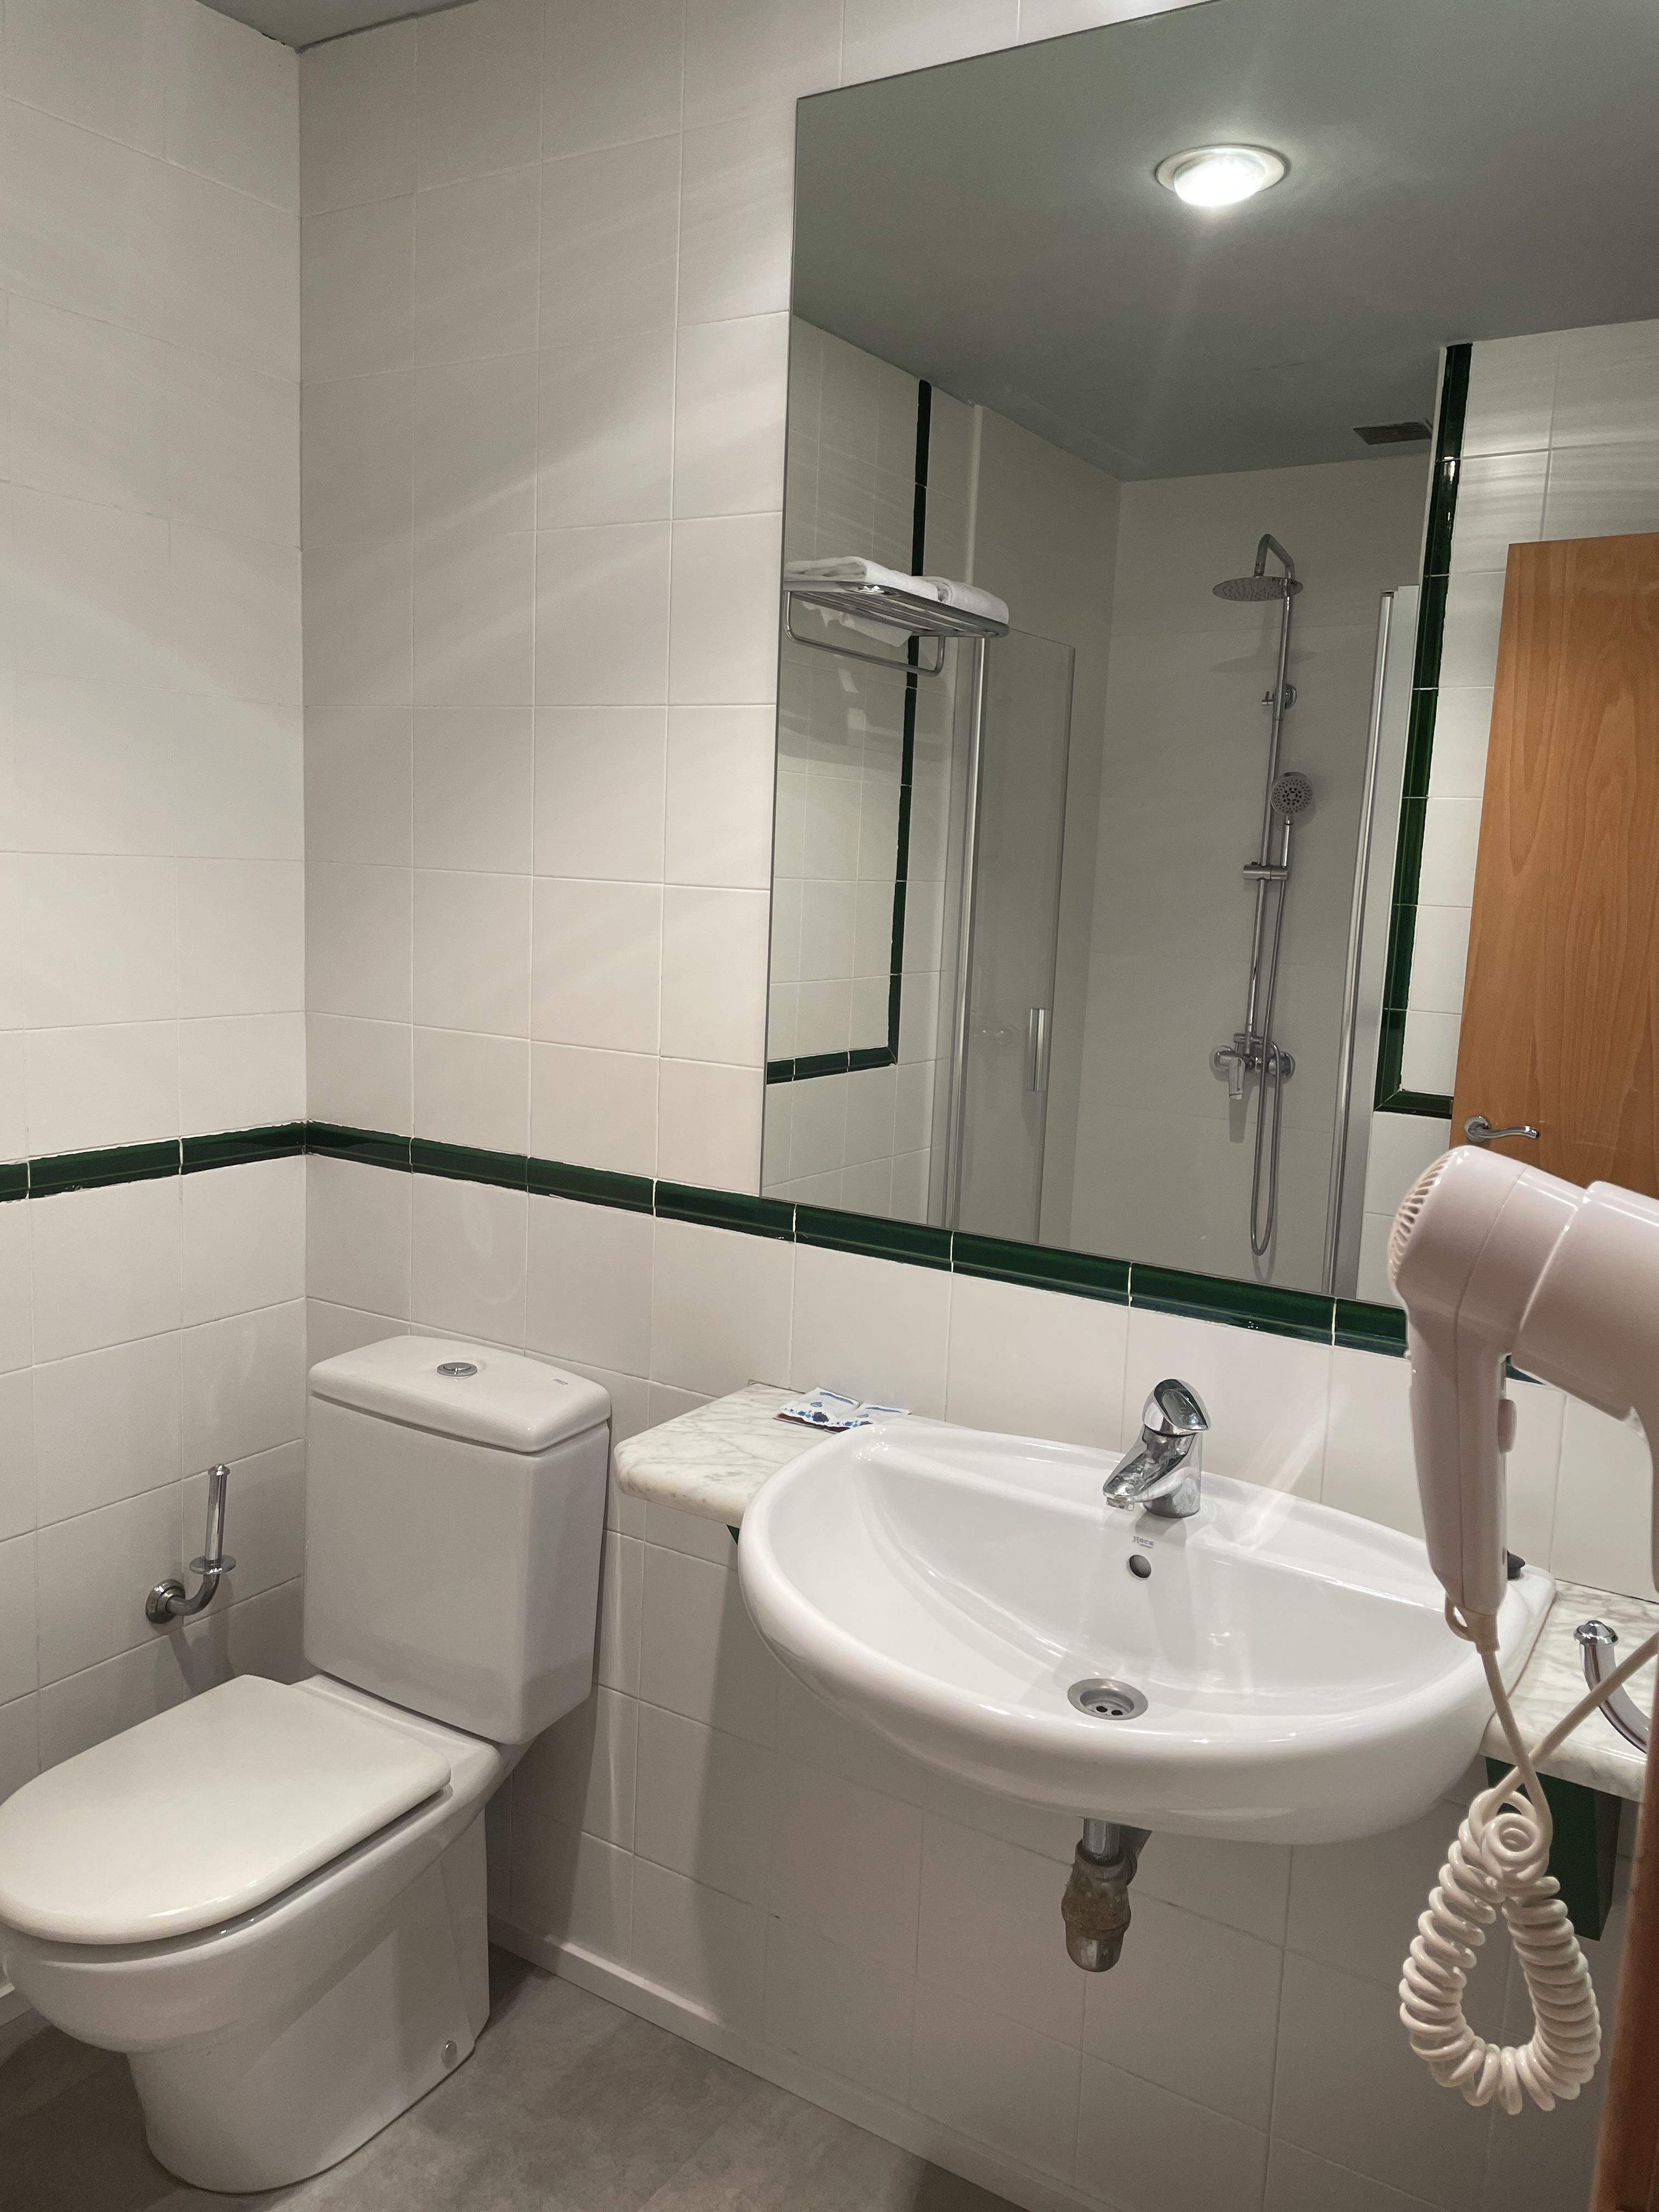 Hotel en Calahorra dotado de baño completo para el disfruta de sus huéspedes